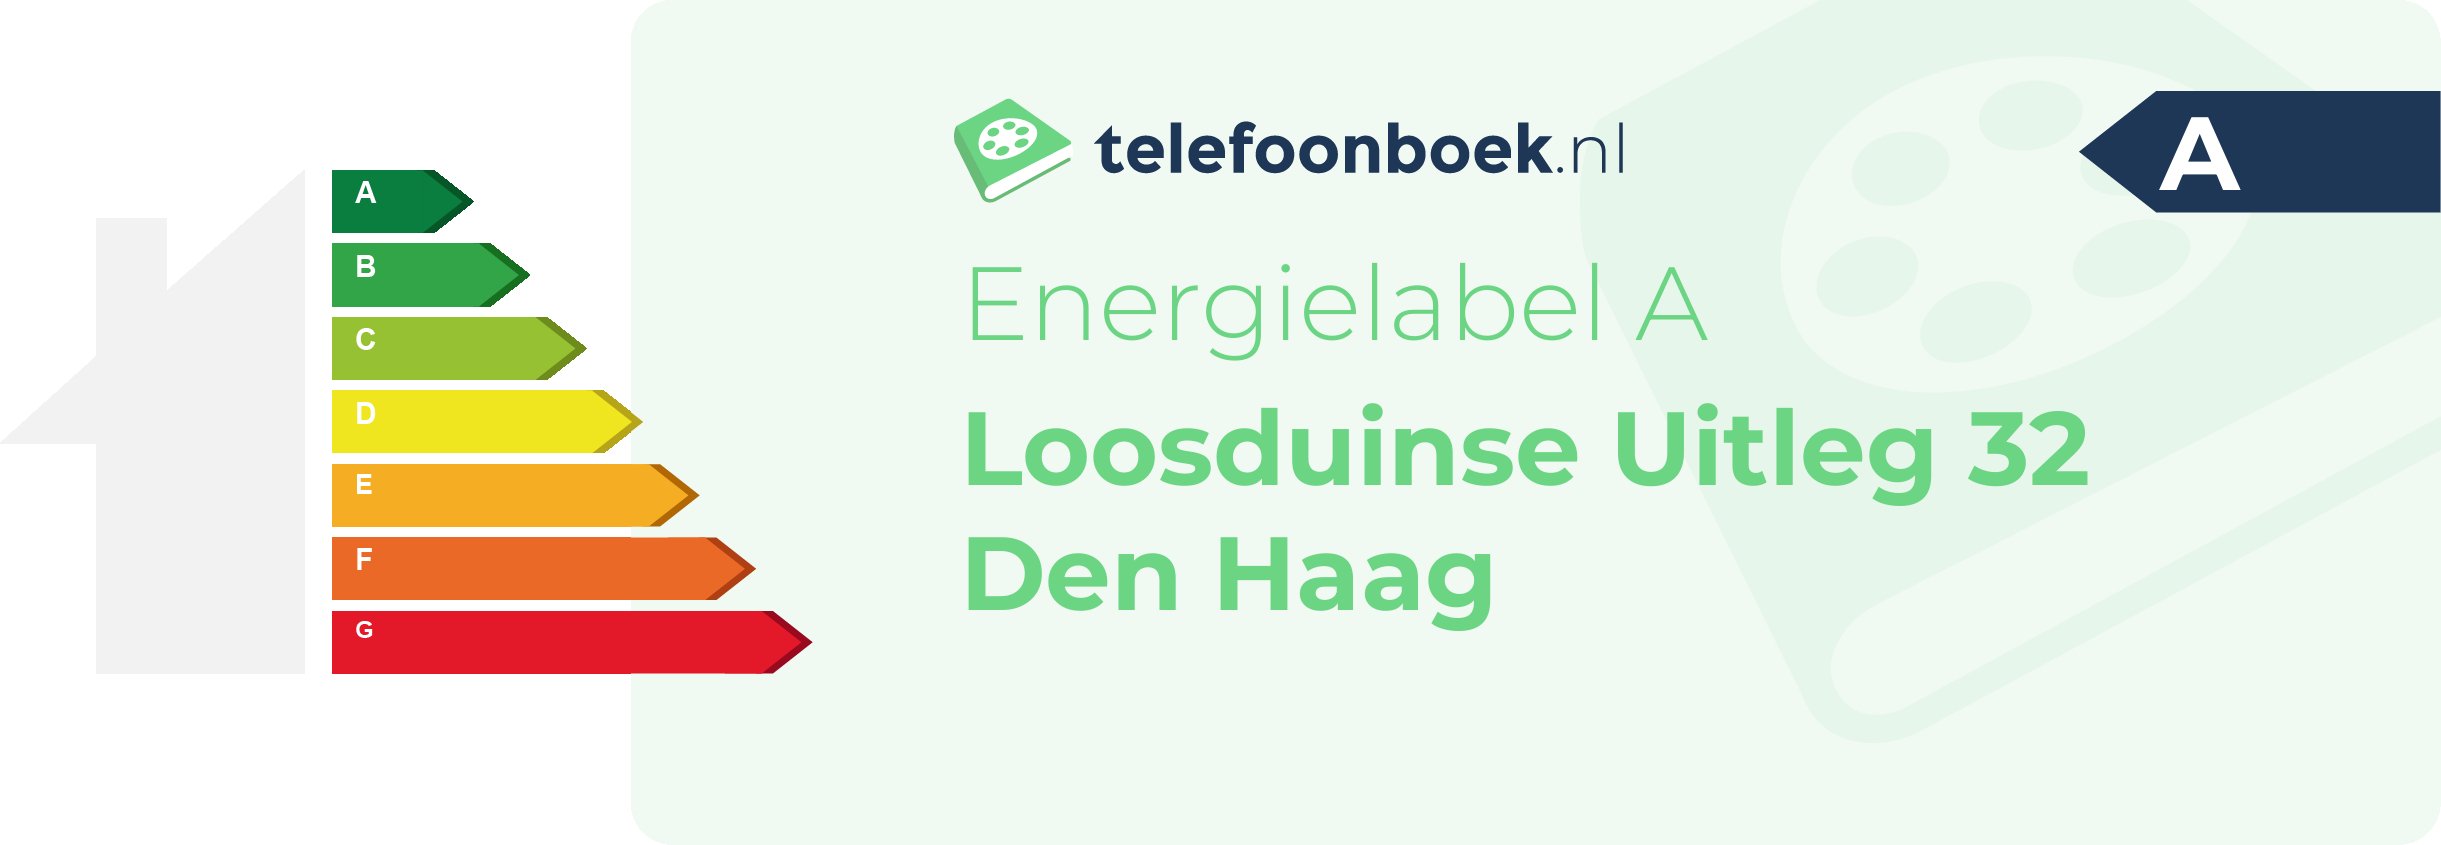 Energielabel Loosduinse Uitleg 32 Den Haag